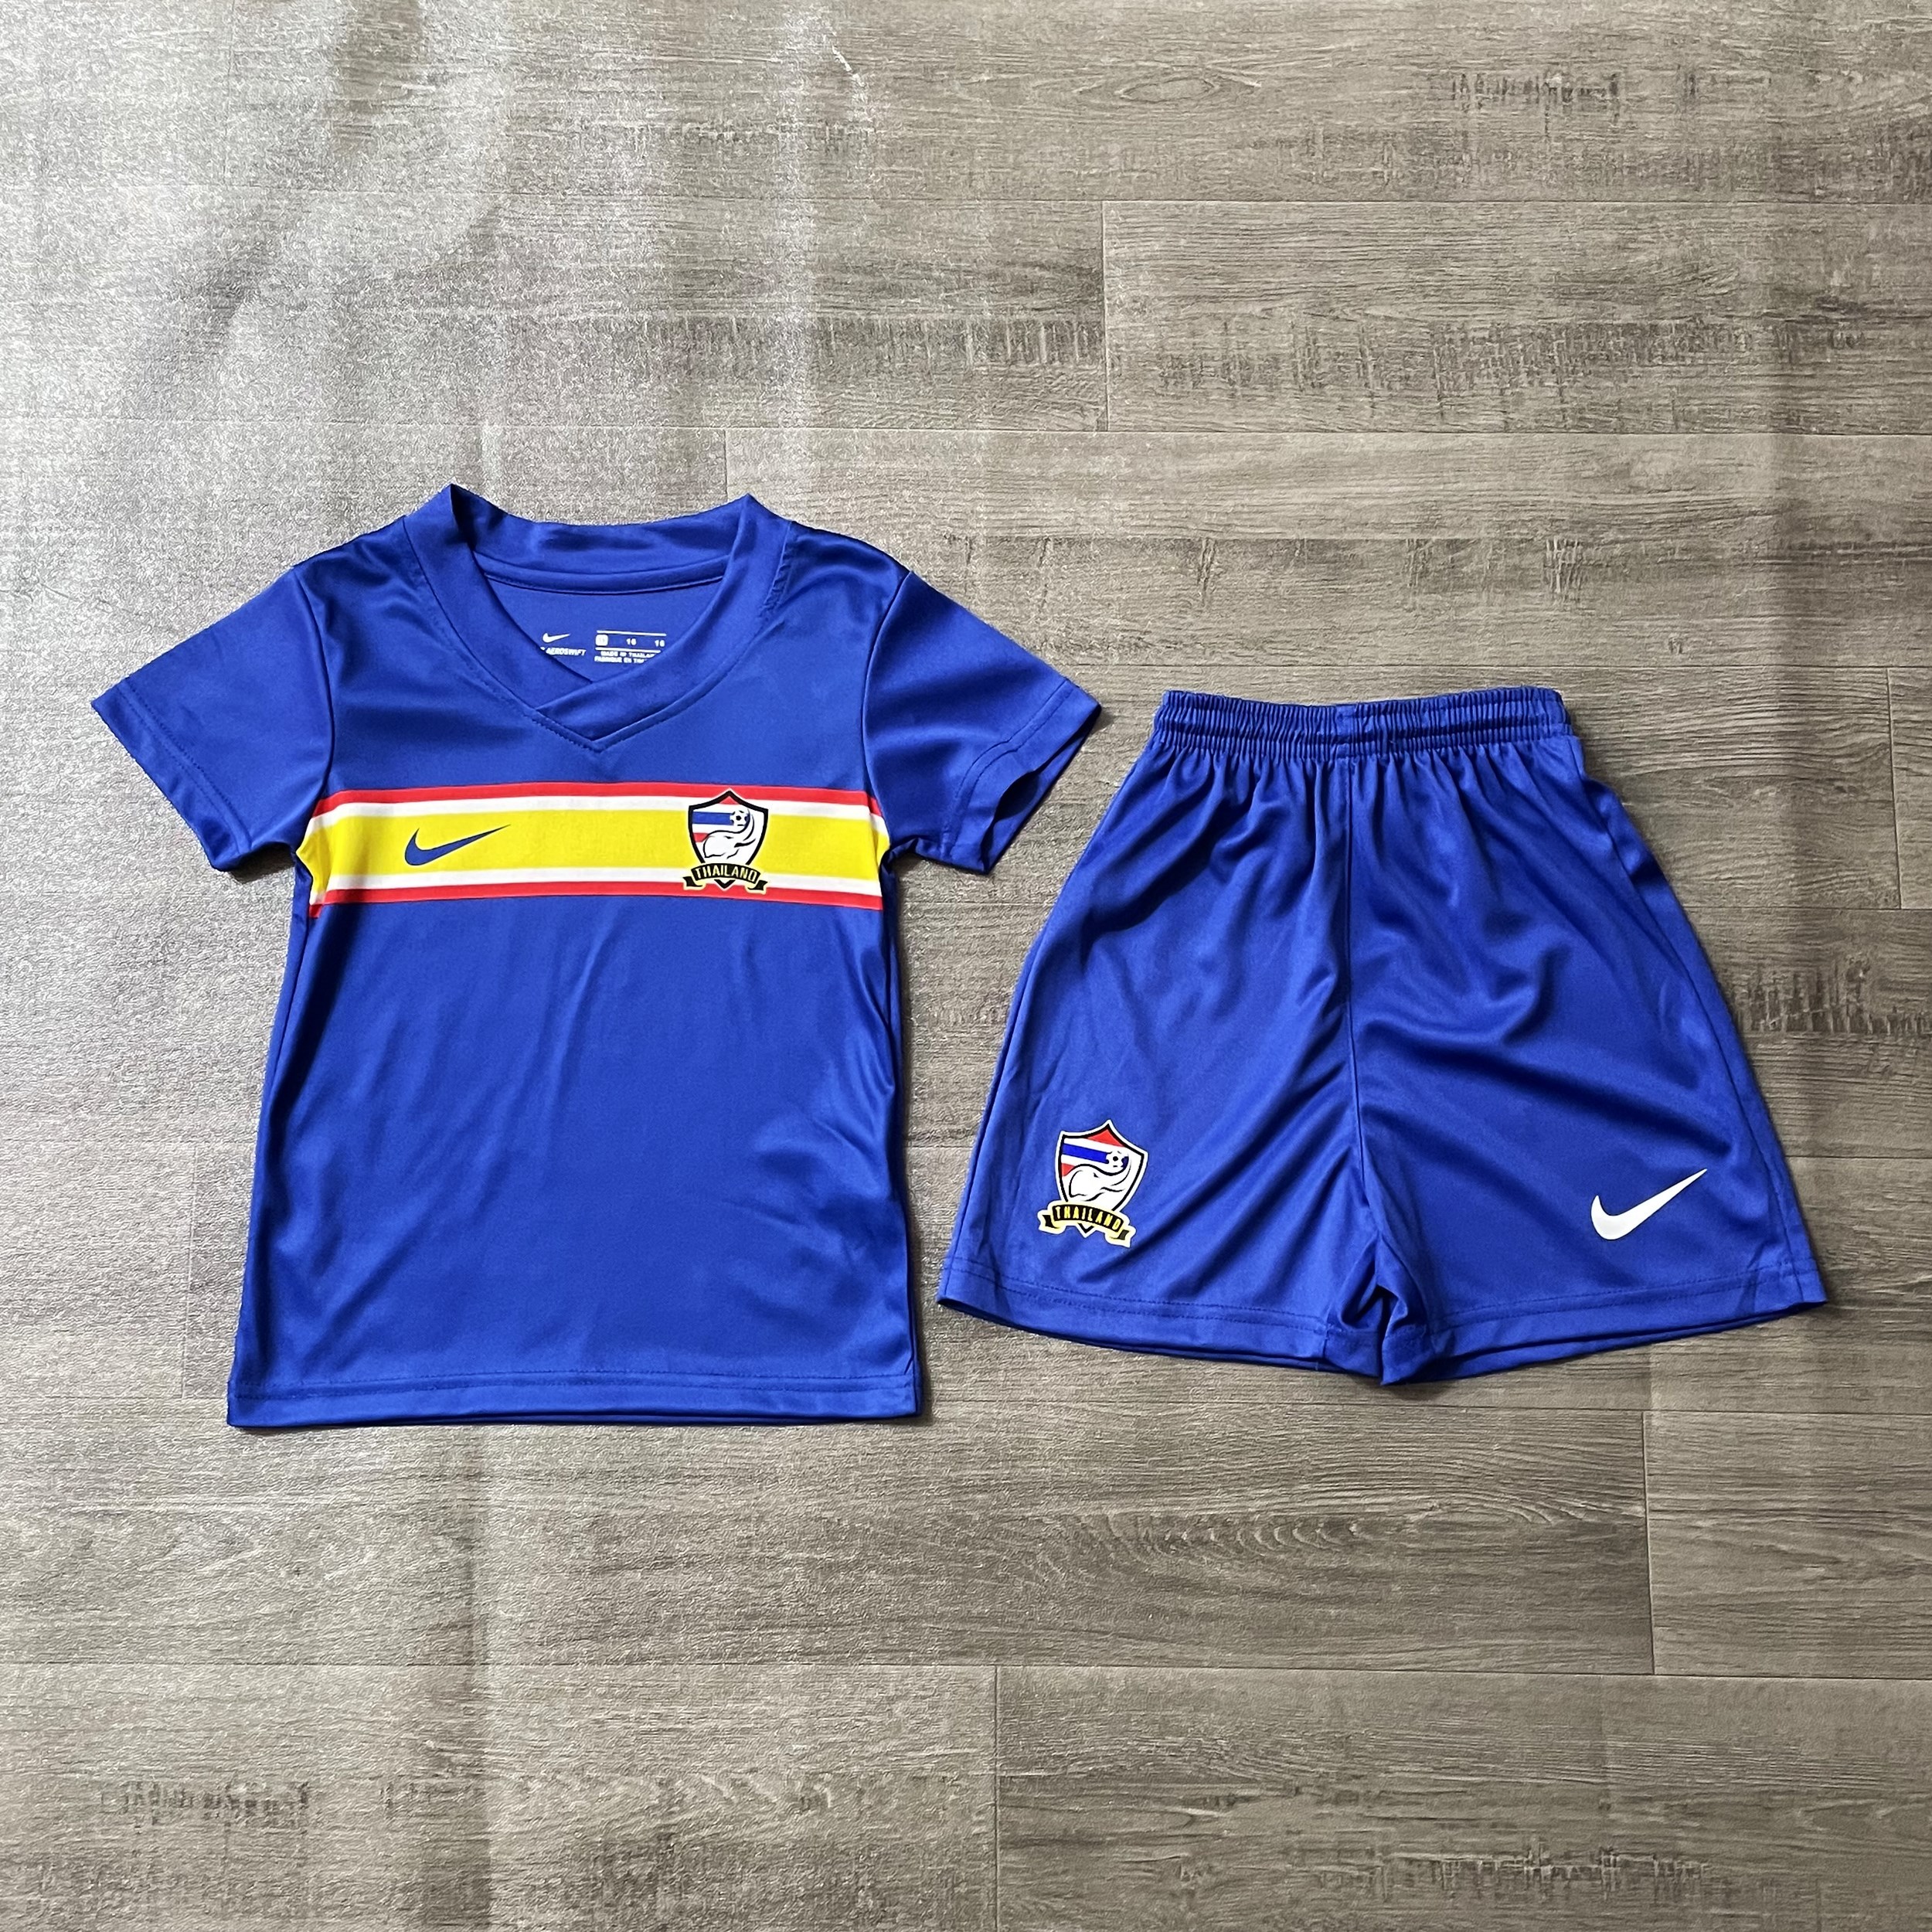 ชุดบอลเด็ก ชุดกีฬาเด็กทีมไทยแลนด์ ซื้อครั้งเดียวได้ทั้งชุด (เสื้อ+กางเกง) ซื้อตัวเดียวในราคาส่ง  เกรด-A